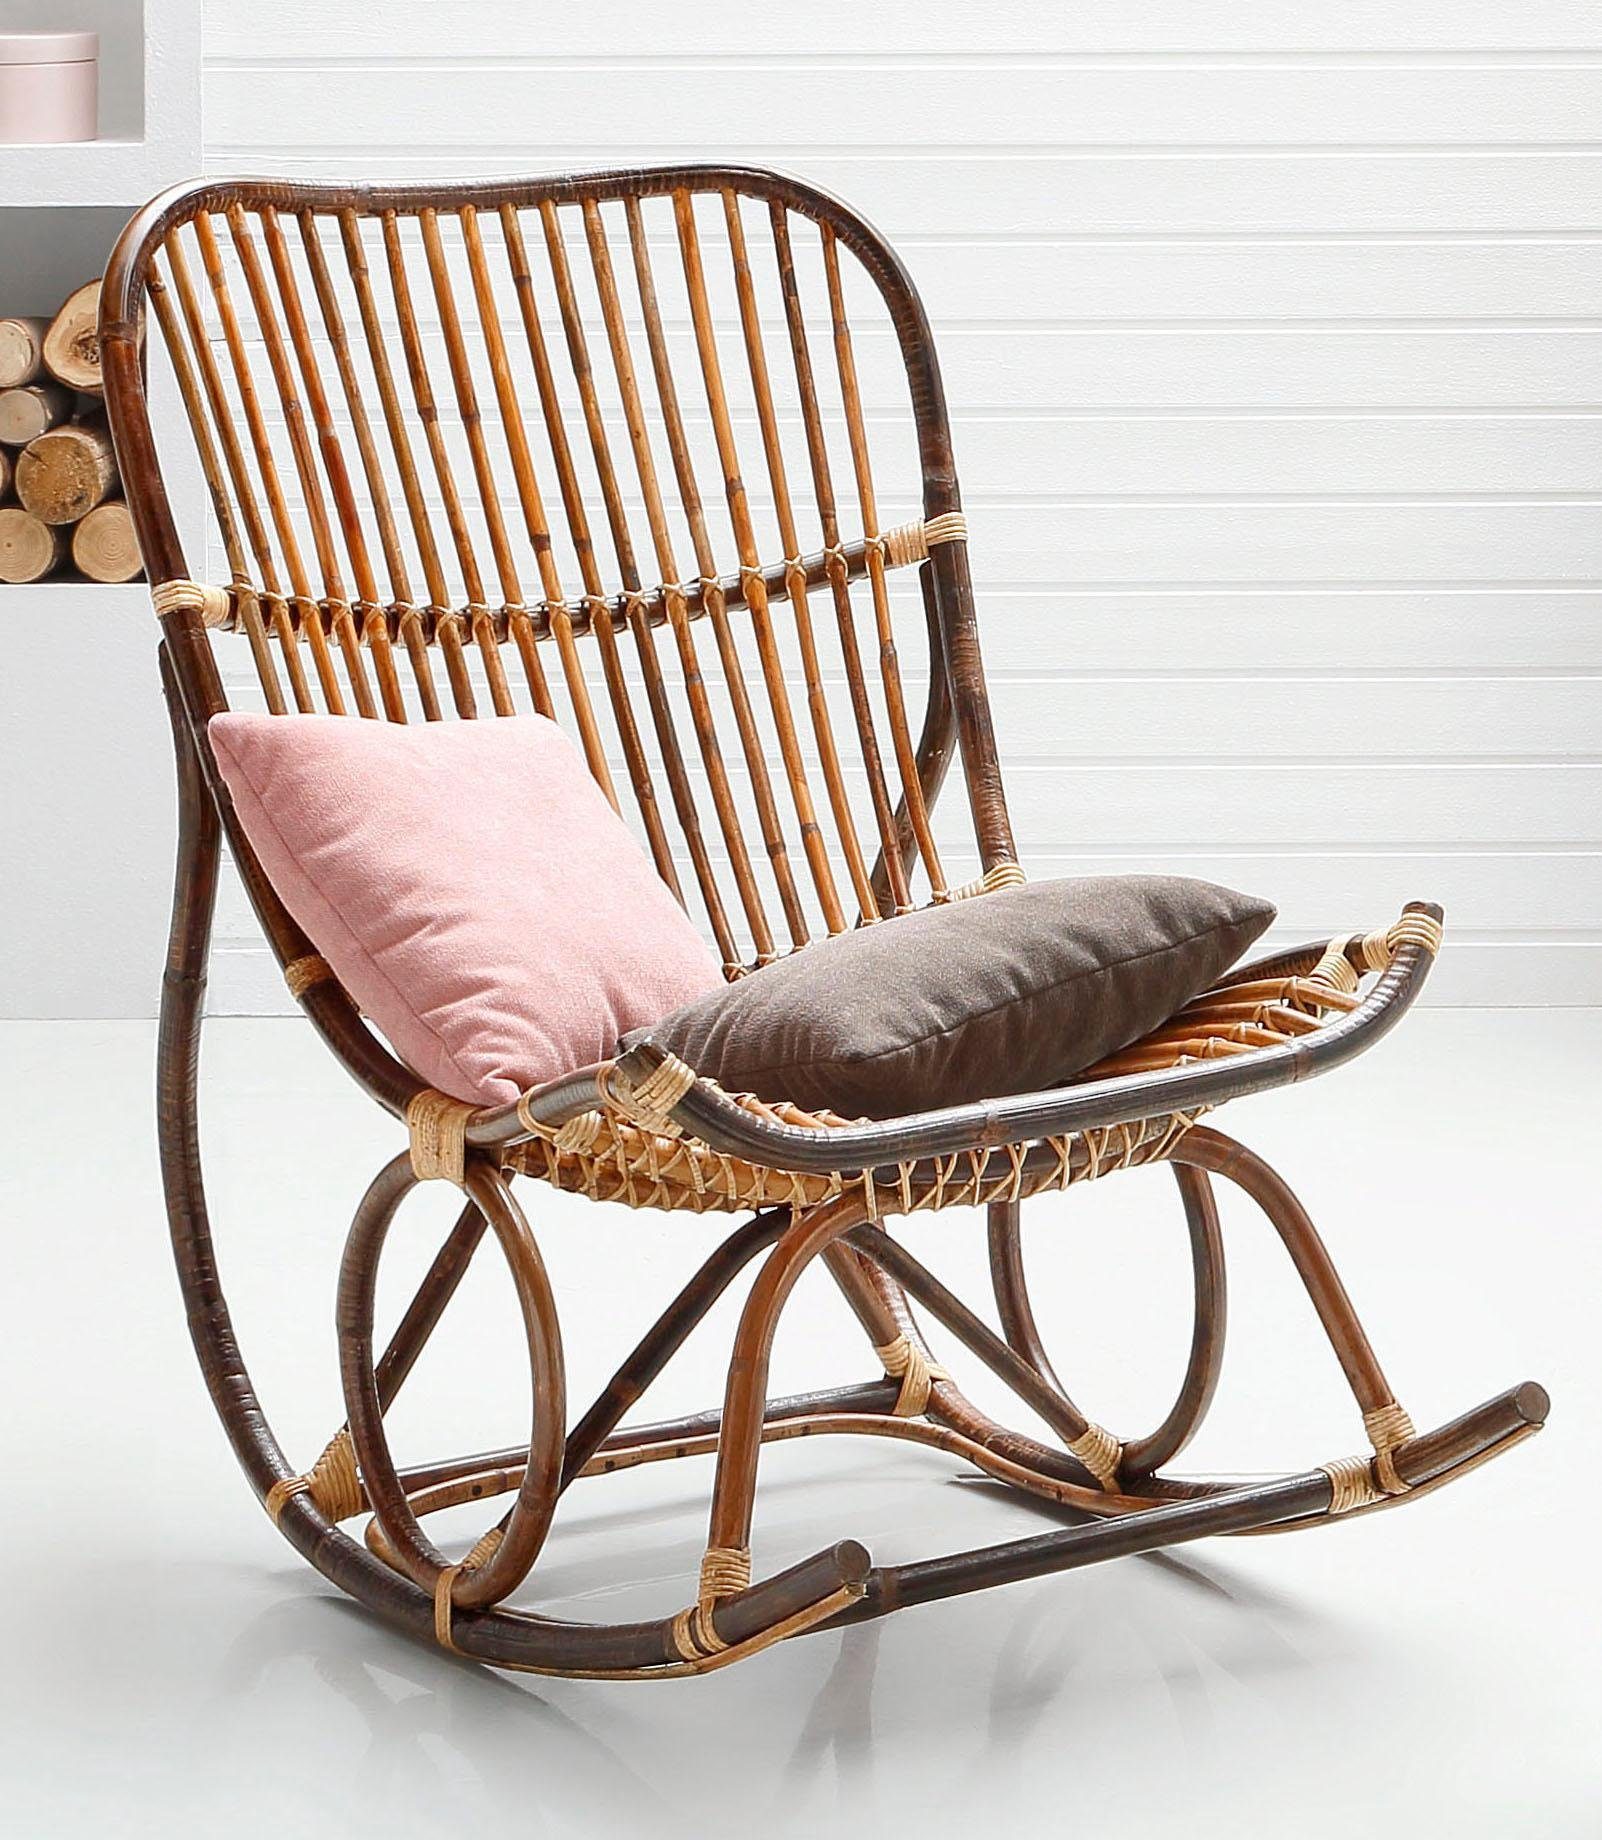 sit schommelstoel vintage met de hand gemaakt bruin